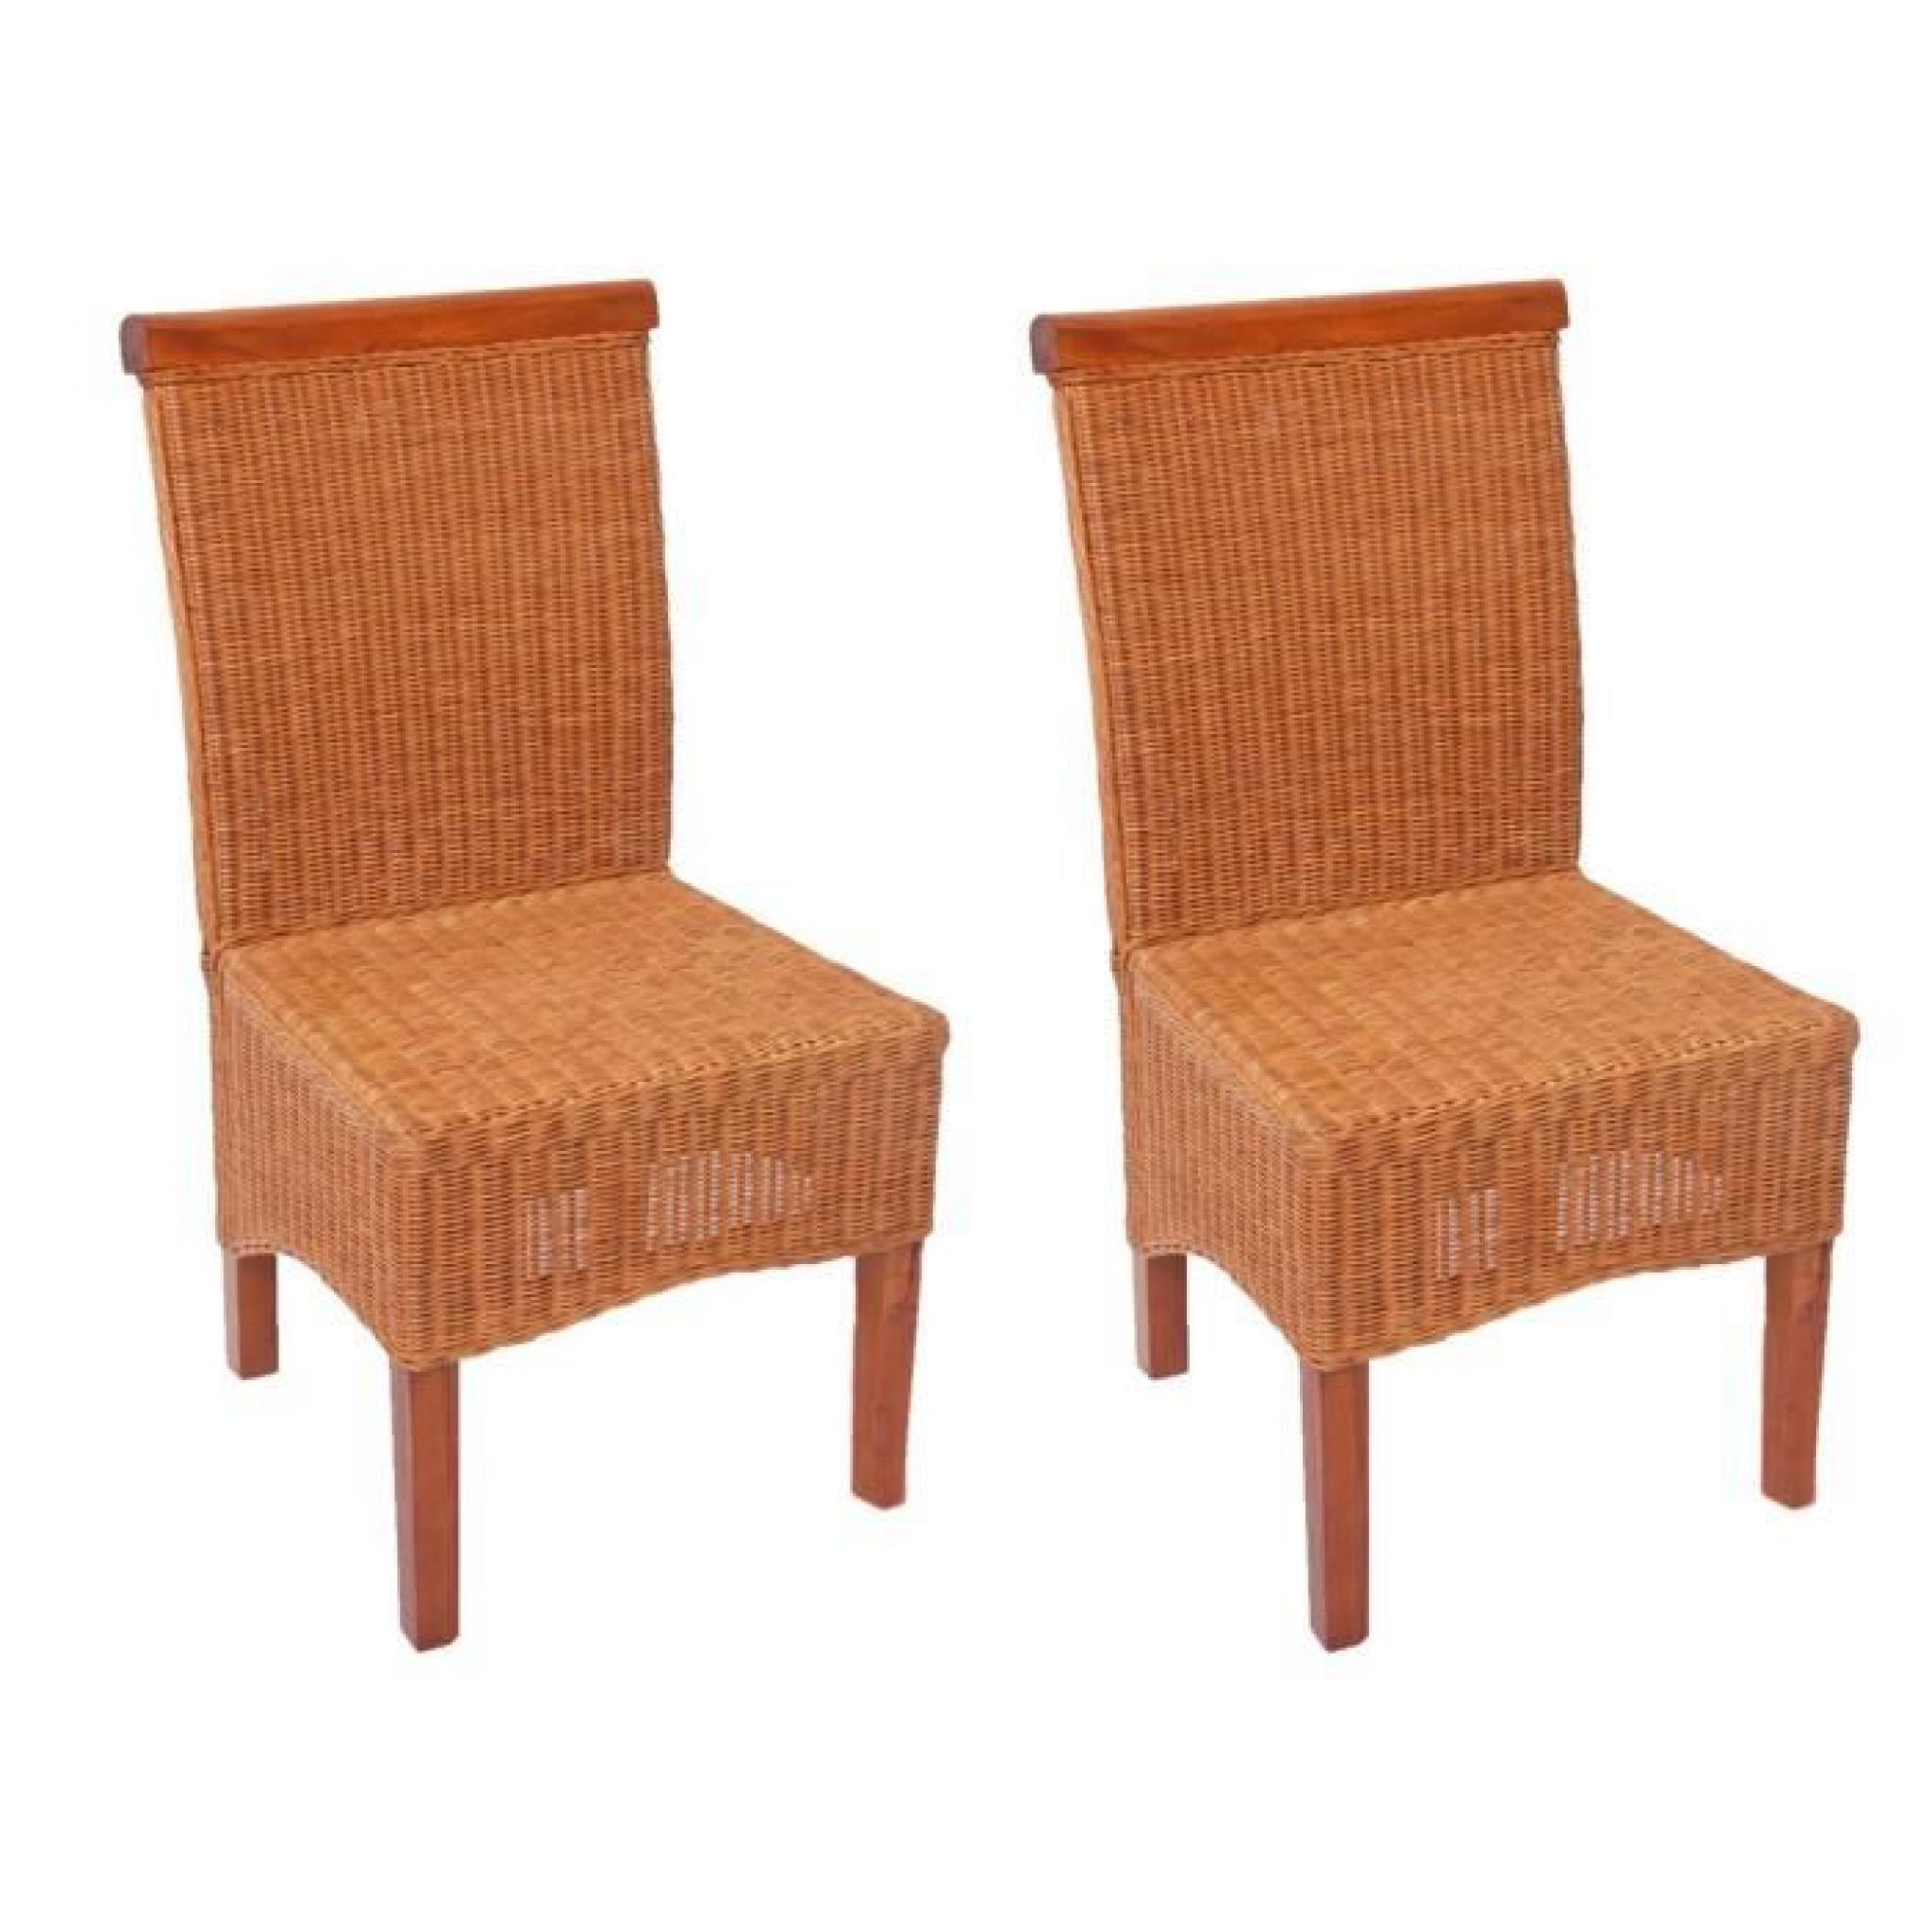 Lot de 2 chaises M42 salle à manger, rotin/bois, 46x50x96cm